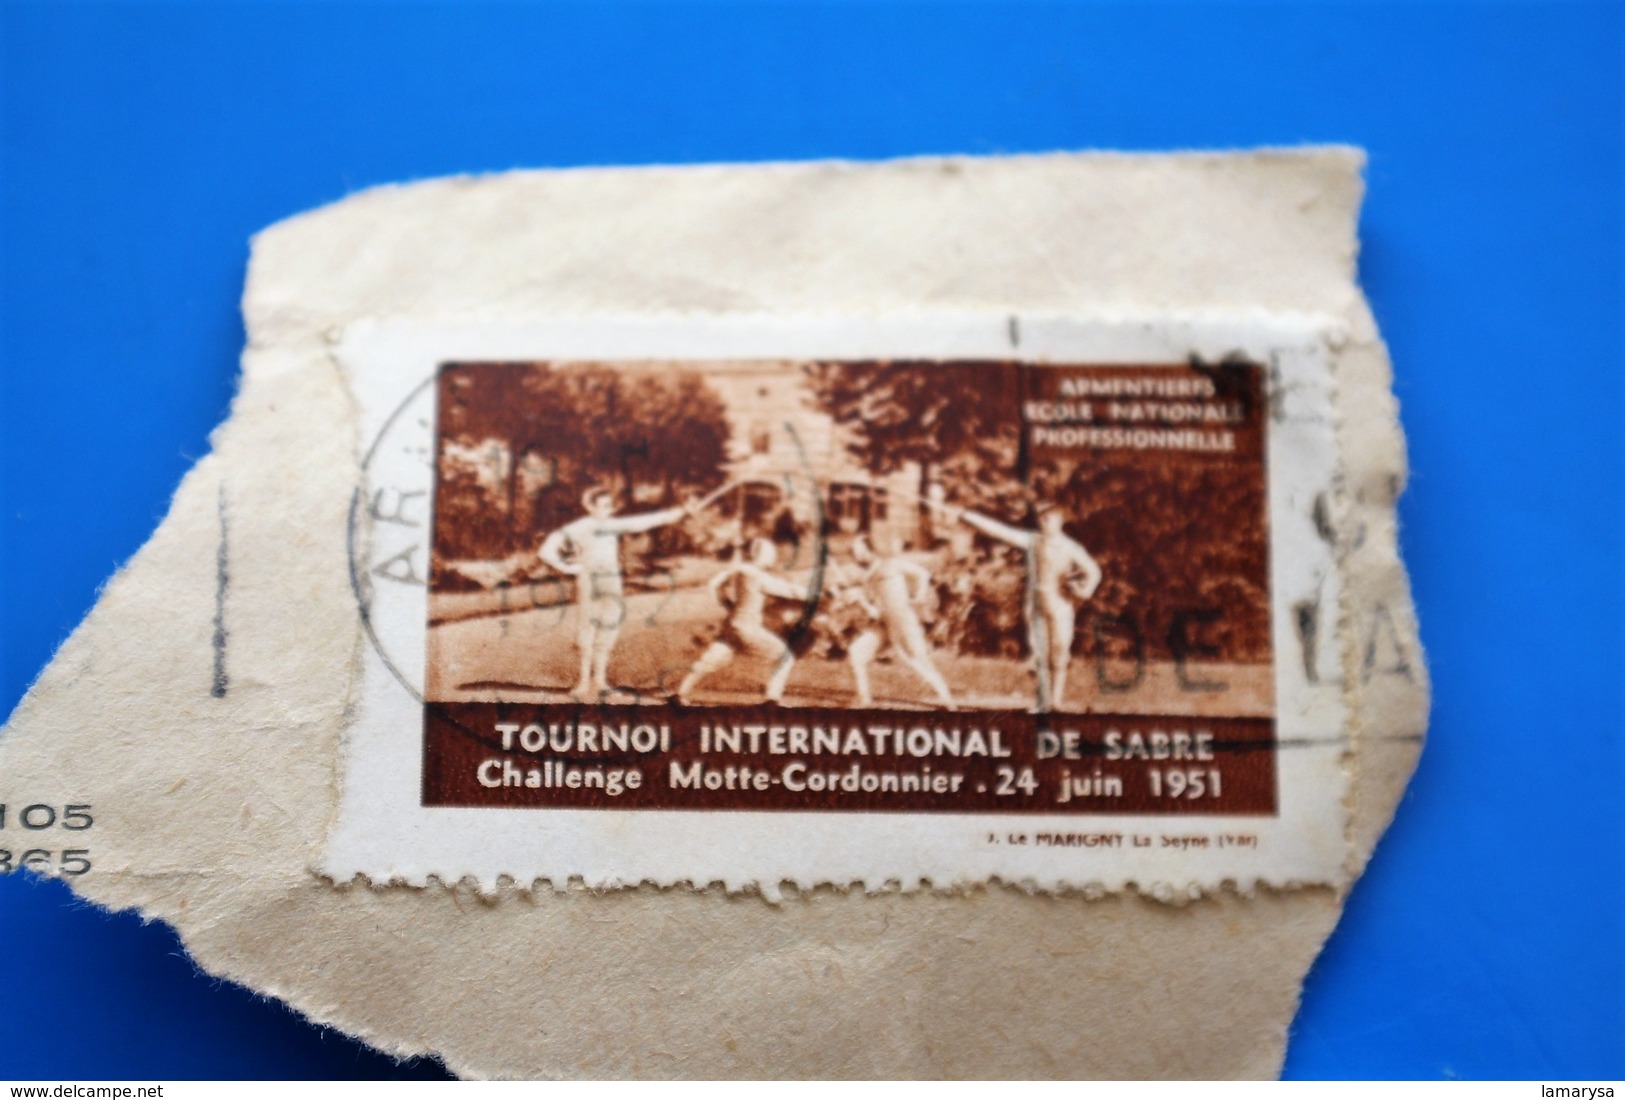 ARMENTIÈRES 1951 TOURNOI INTERNATIONAL DE SABRE CHALLE MAÎTRE CORDONNIER Vignette-Erinnophilie,Timbre,stamp,Bollo-Viñeta - Deportes